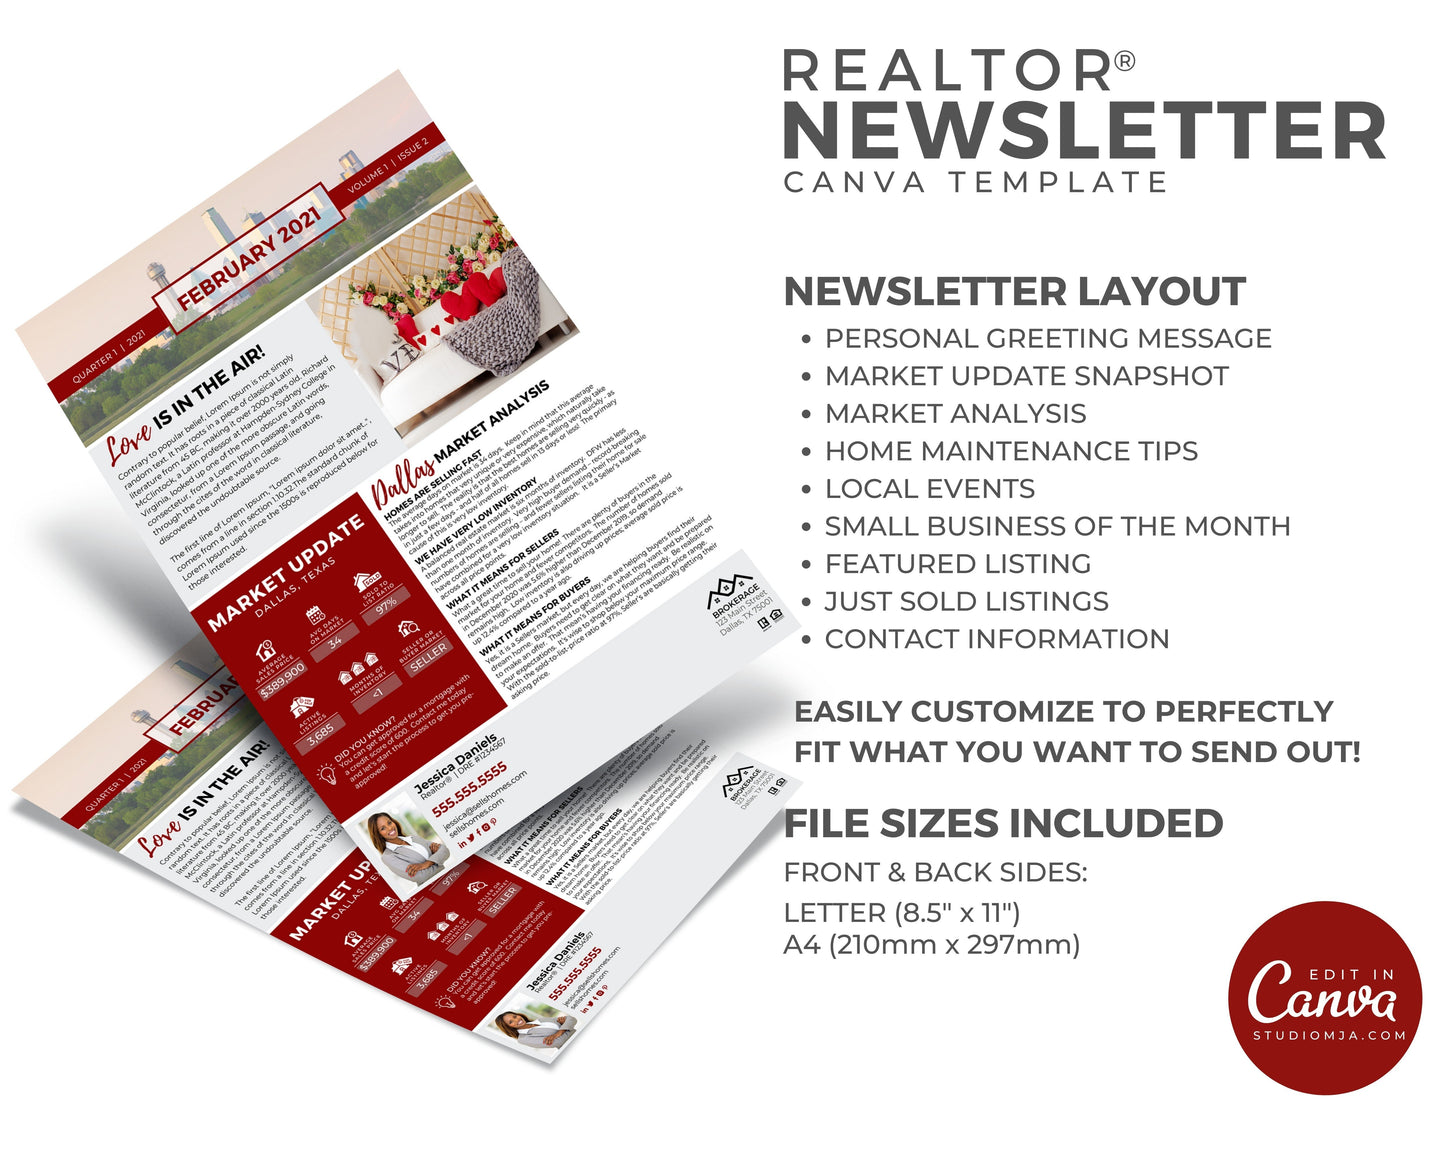 Realtor Newsletter Template - February